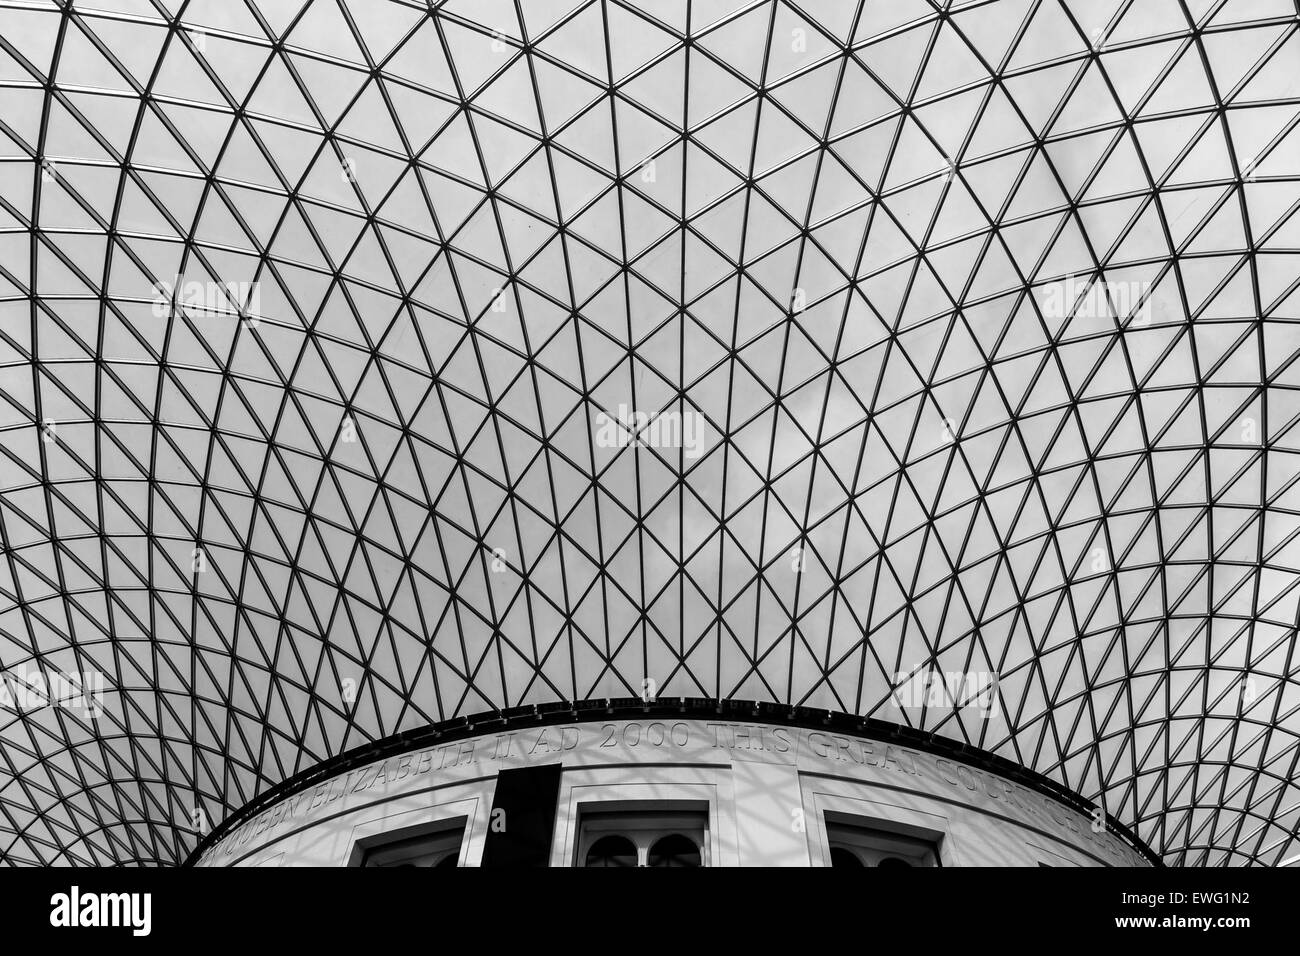 Queen Elizabeth II Great Court Architecture Geometric Great Court Indoor London Museum Queen Elizabeth II Great Court Triangles black And White design monochrome Stock Photo